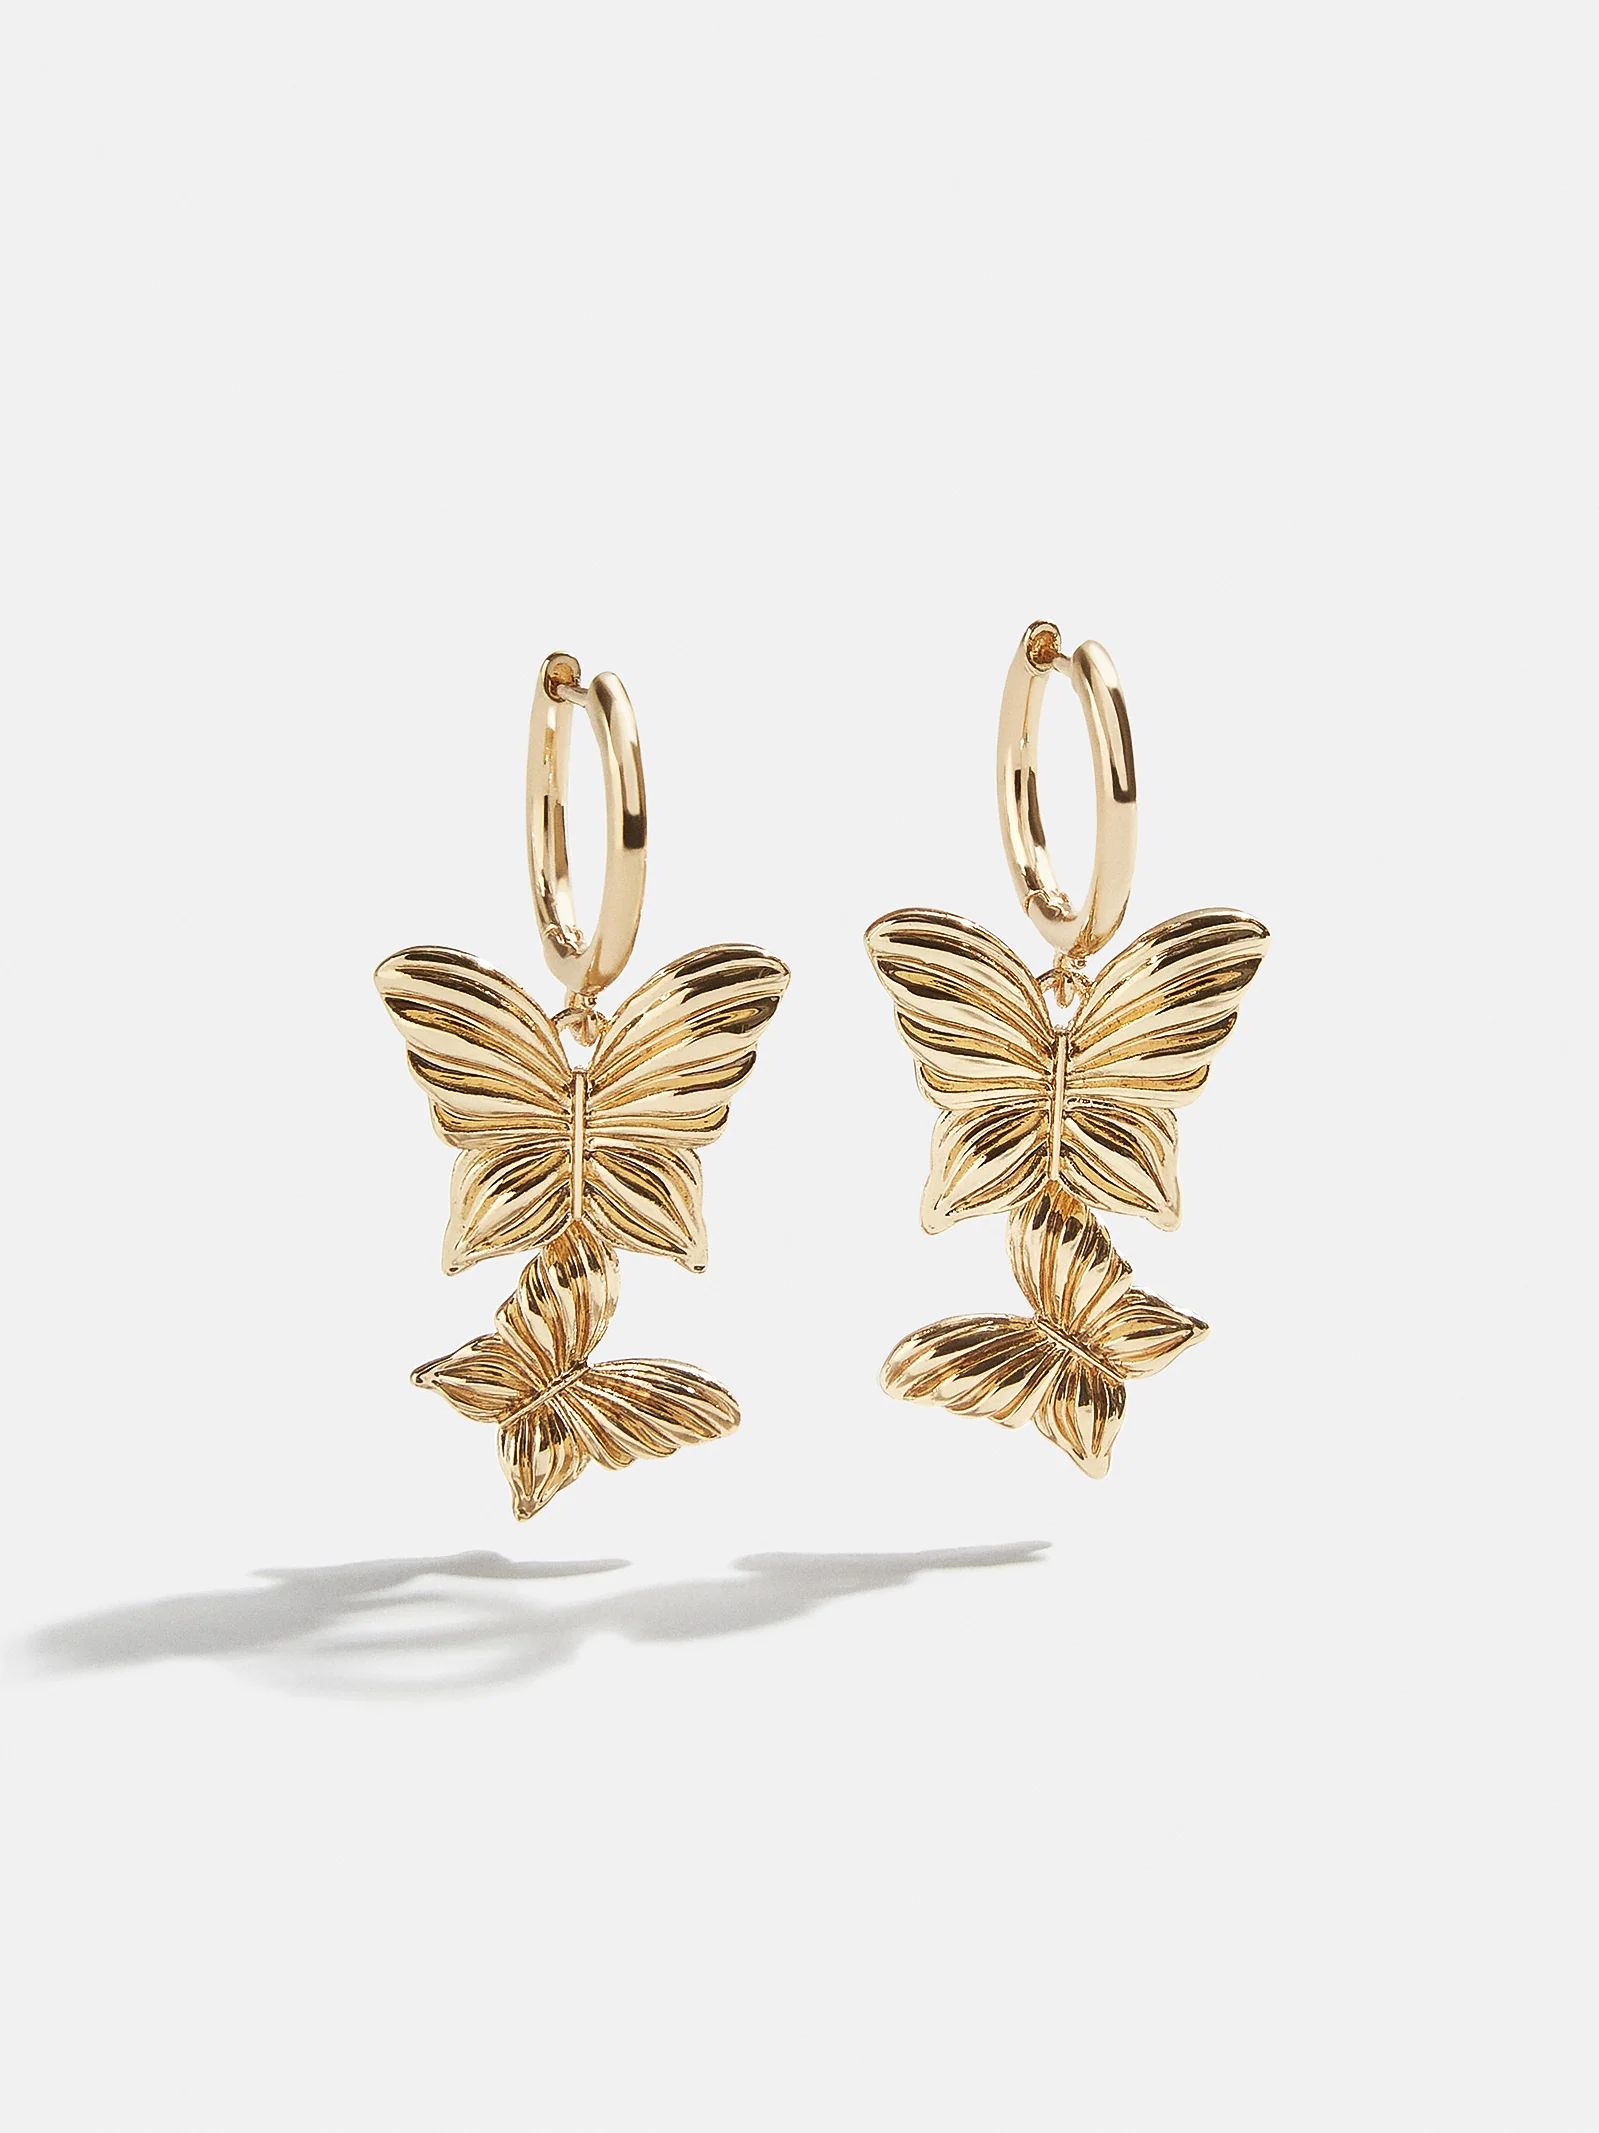 Spread Your Wings Earrings - Gold | BaubleBar (US)